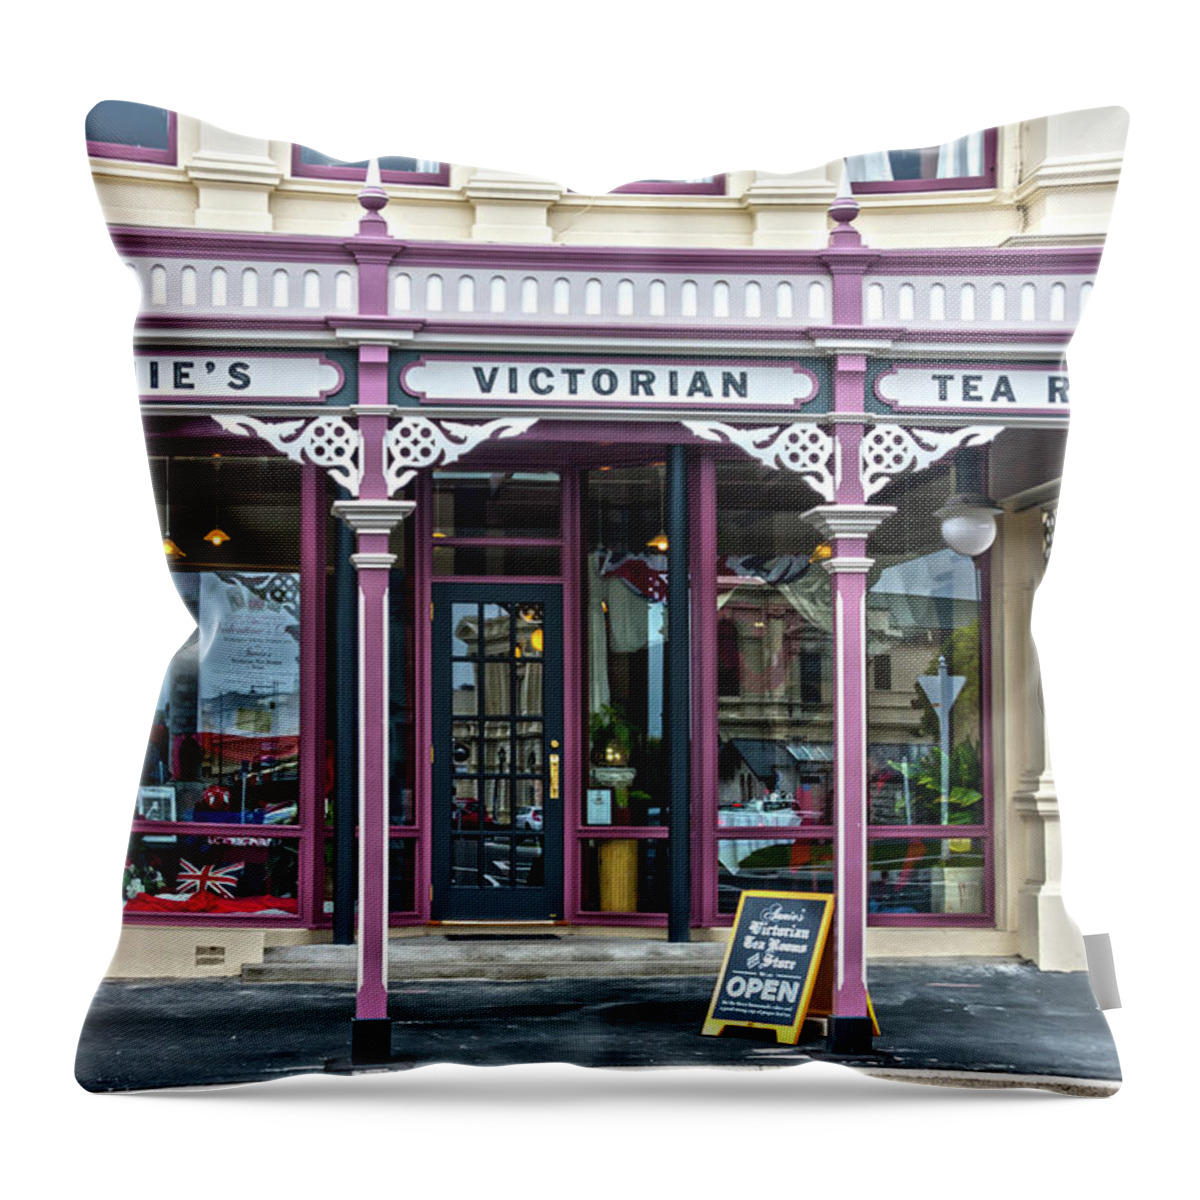 Annie's Victorian Tea Rooms Throw Pillow featuring the photograph Annie's Victorian Tea Rooms, by Kevin Hellon